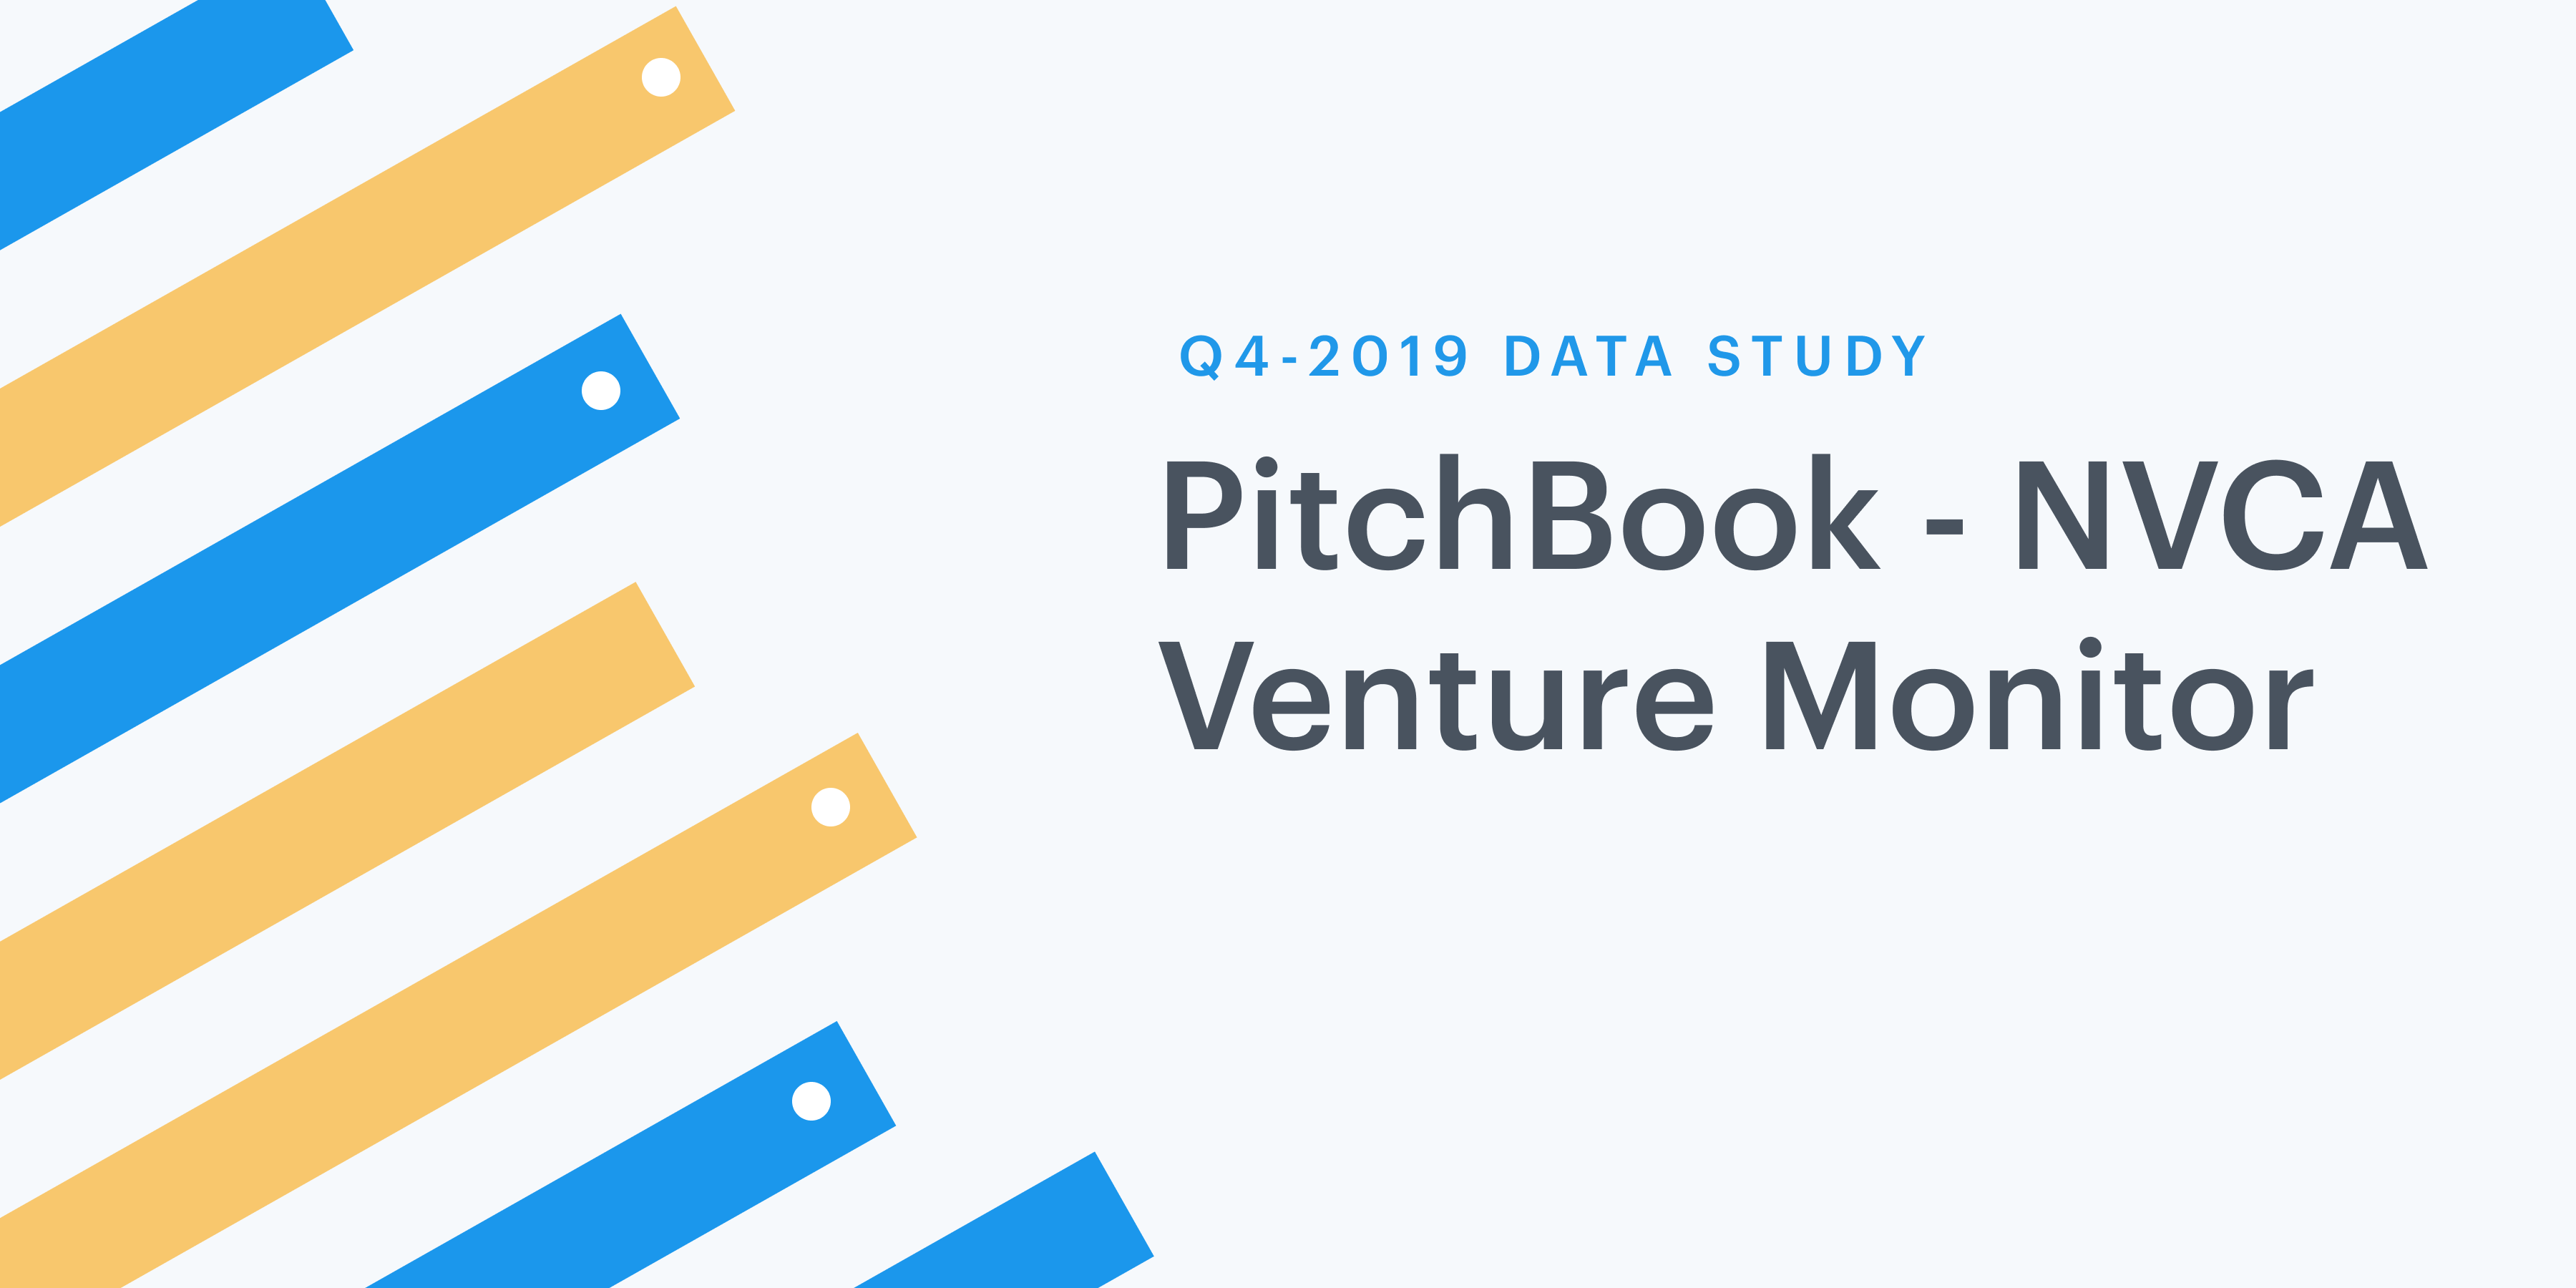 Q4 2019 Pitchbook-NVCA Venture Monitor